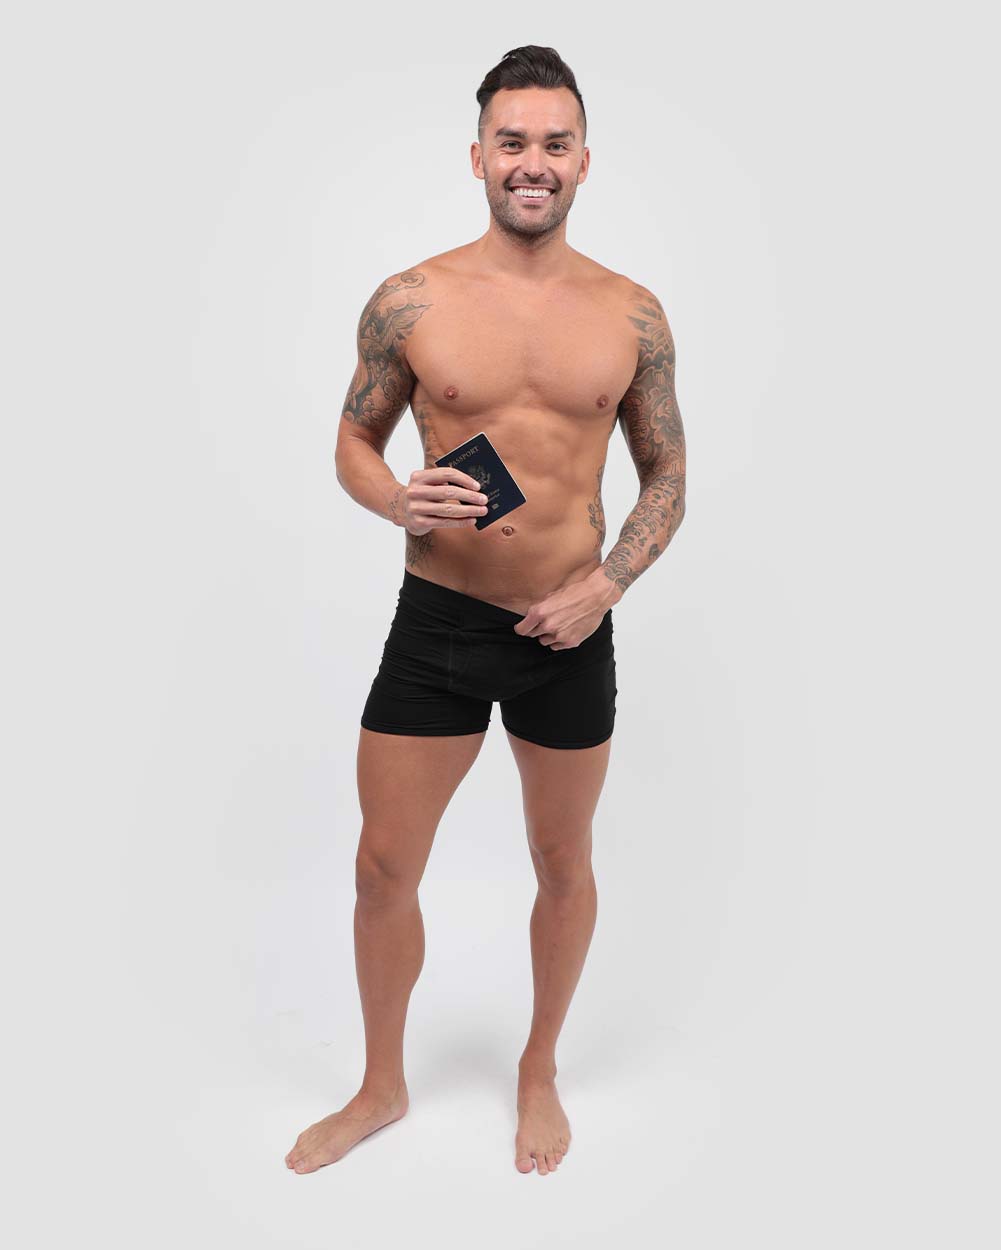 Technicolour Smuggling Duds Men's Secret Stash Pocket Boxers Boxer Shorts  Briefs